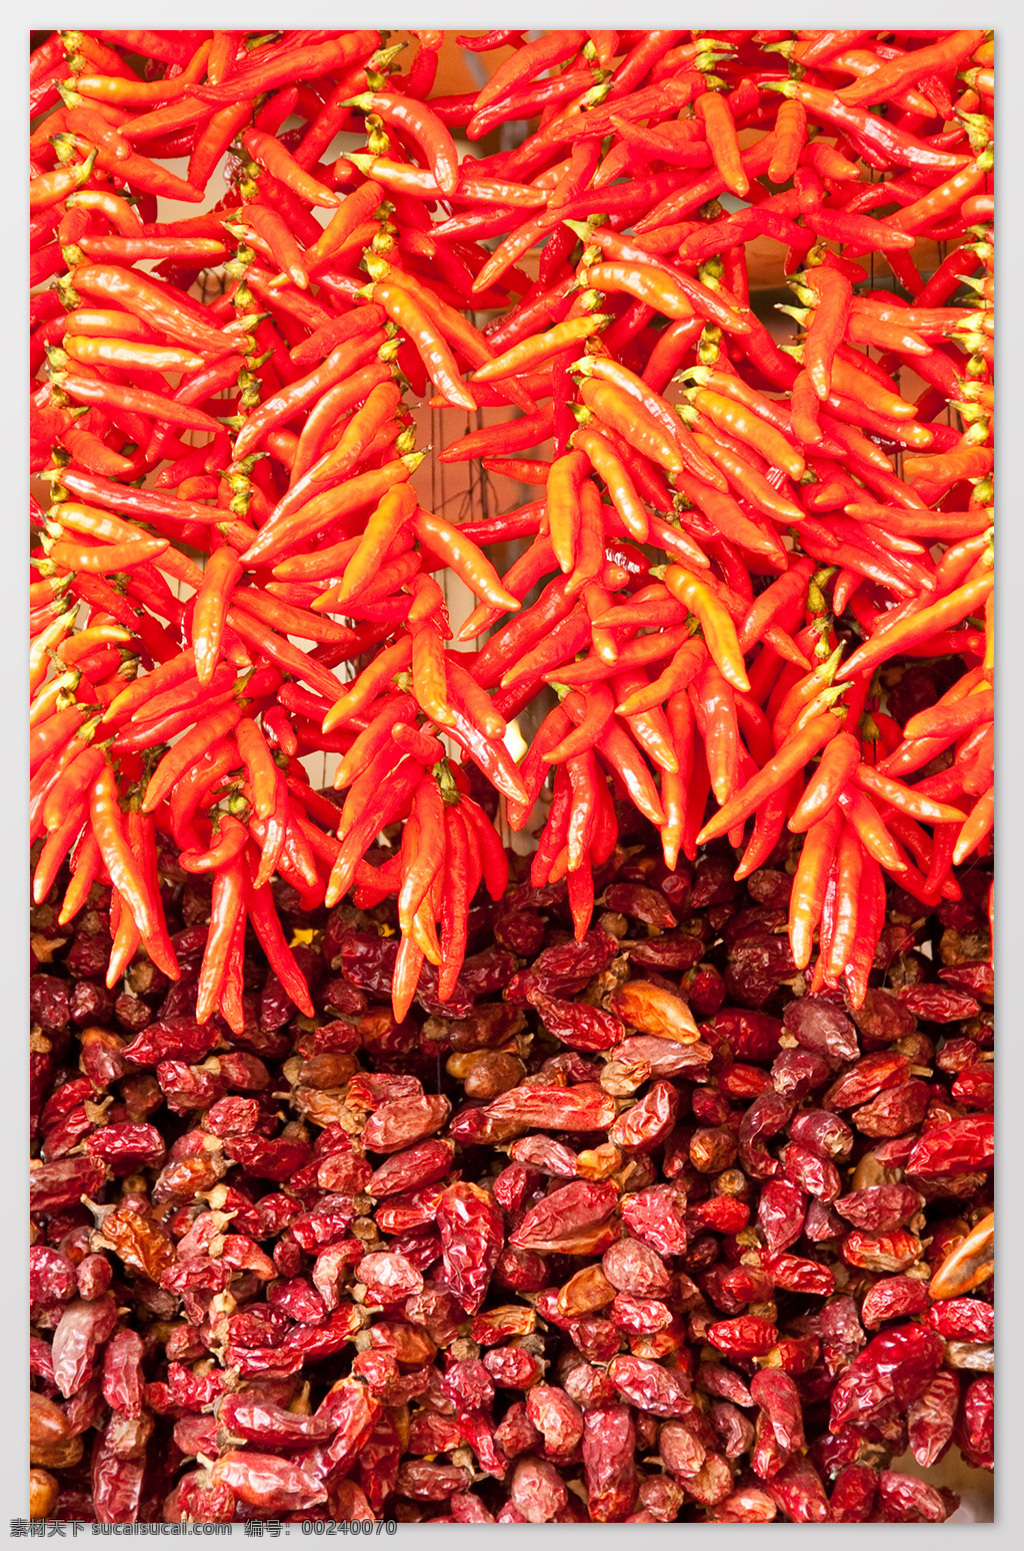 辣椒 红椒 配料 背景 海报 素材图片 食物 中药 水果 类 餐饮美食